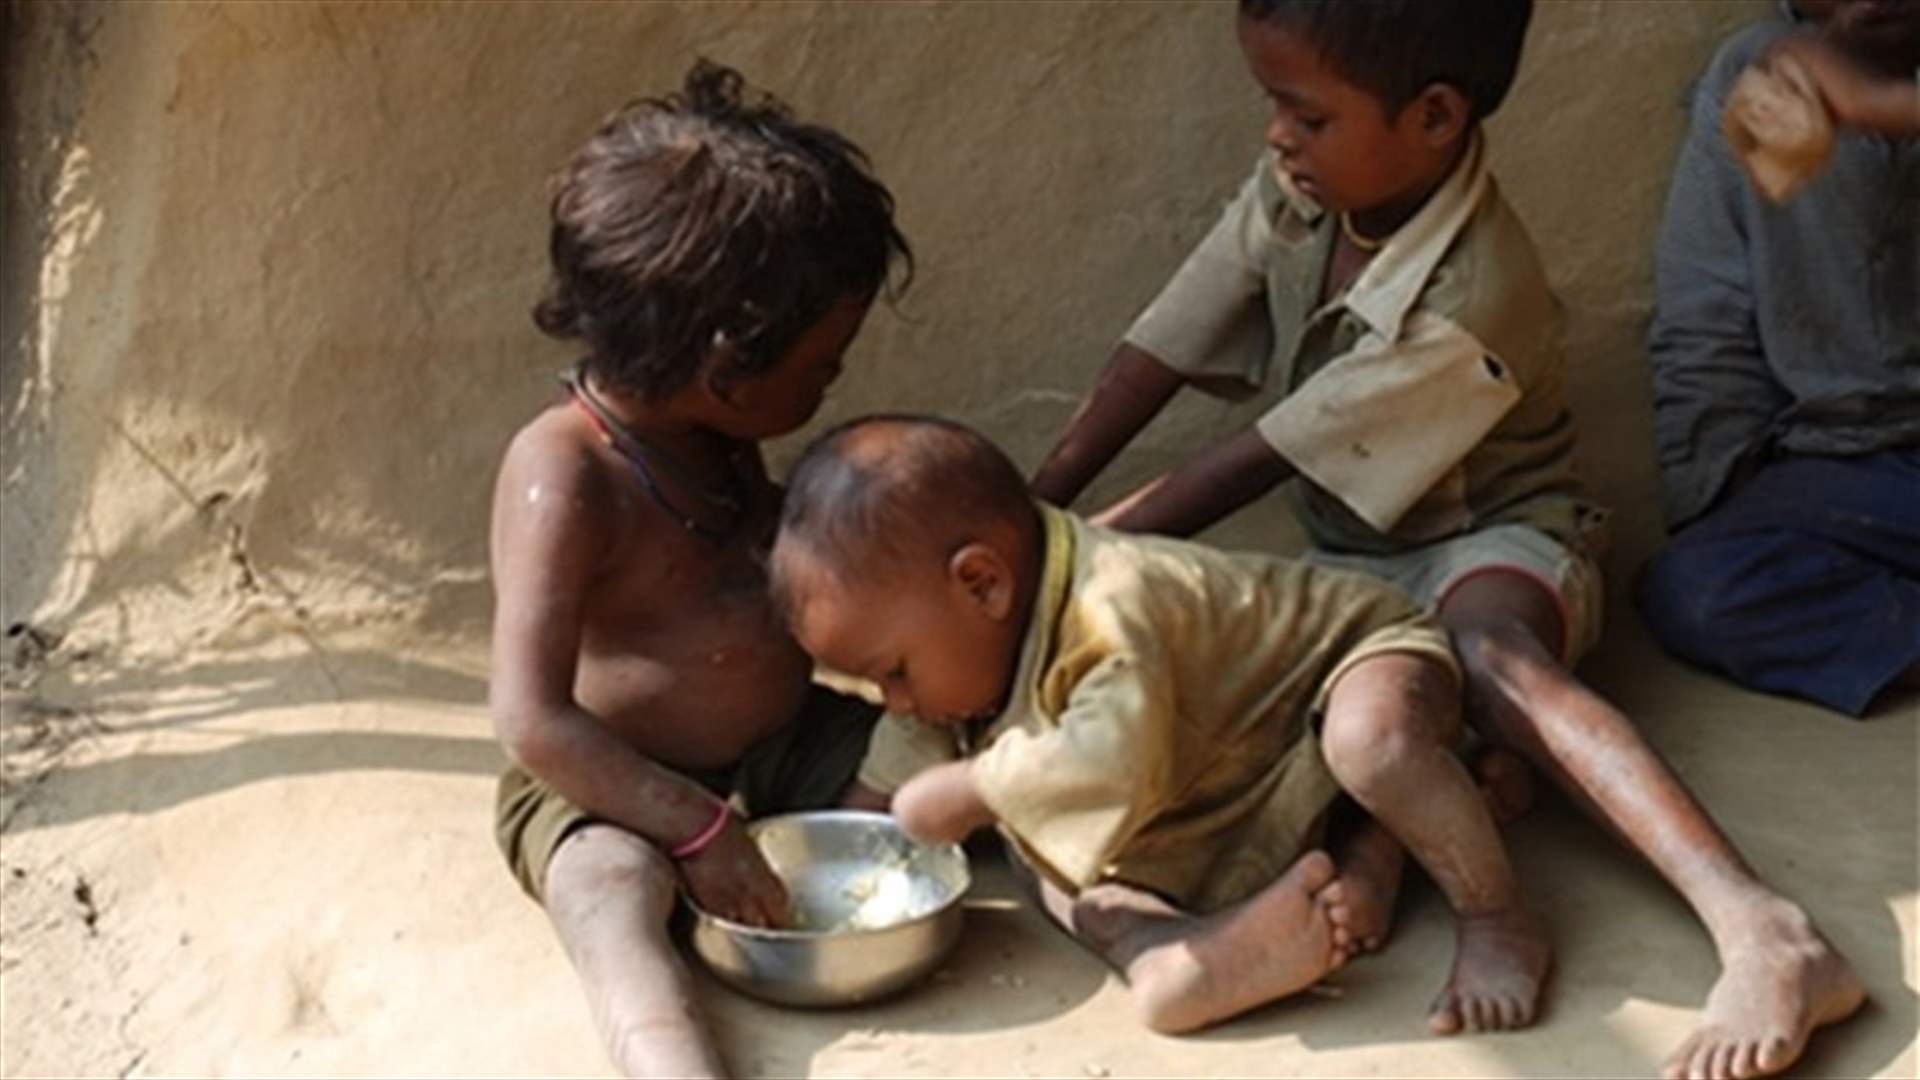 في العام 2017....أكثر من مليون طفل قد يموتون جوعا